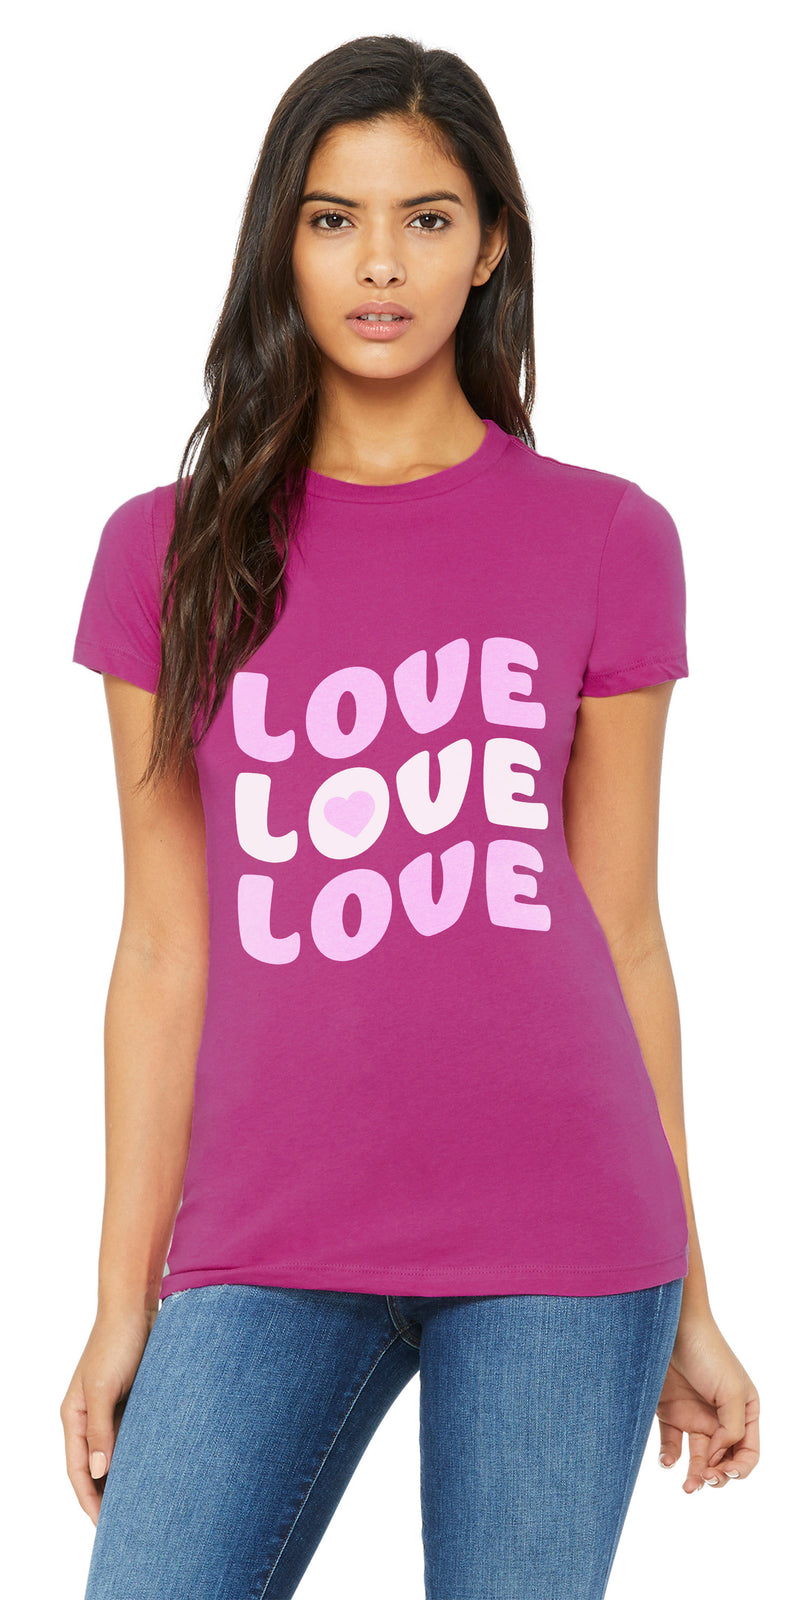 Candy Love - Shirts